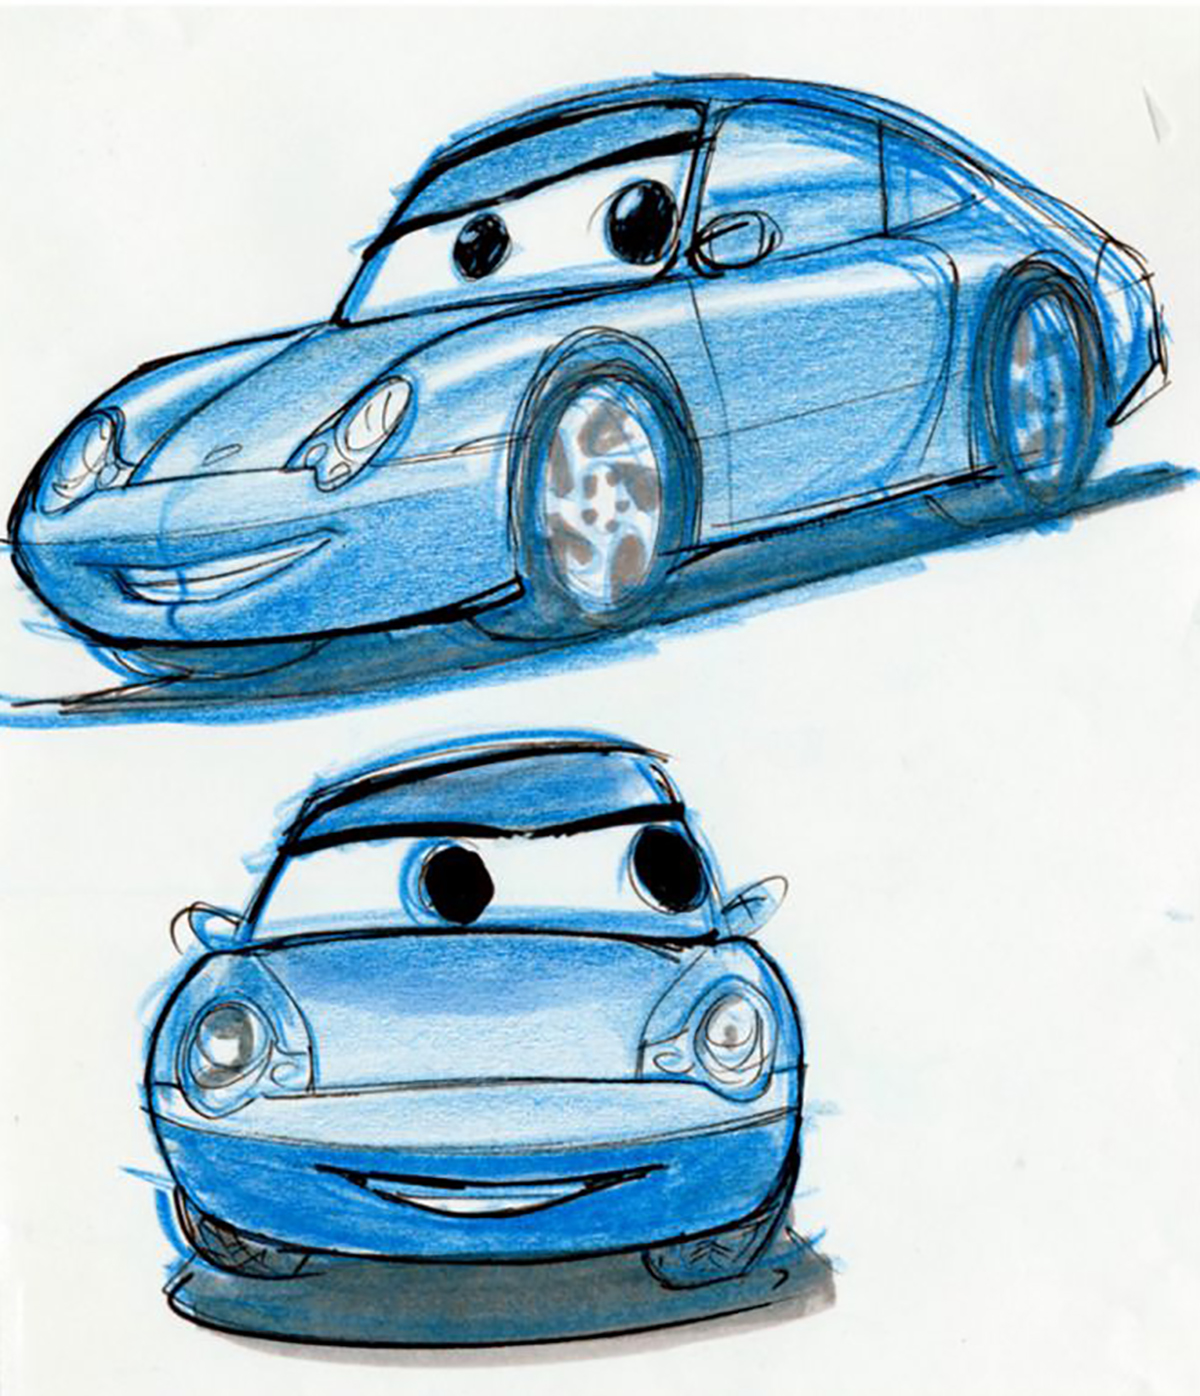 Porsche et Pixar recréent la voiture Sally Carrera du film Cars… en vrai ! (vidéo sur Bidfoly.com) Par Justine Mellado Pixar-porsche-voiture-sally-carrera-cars-1